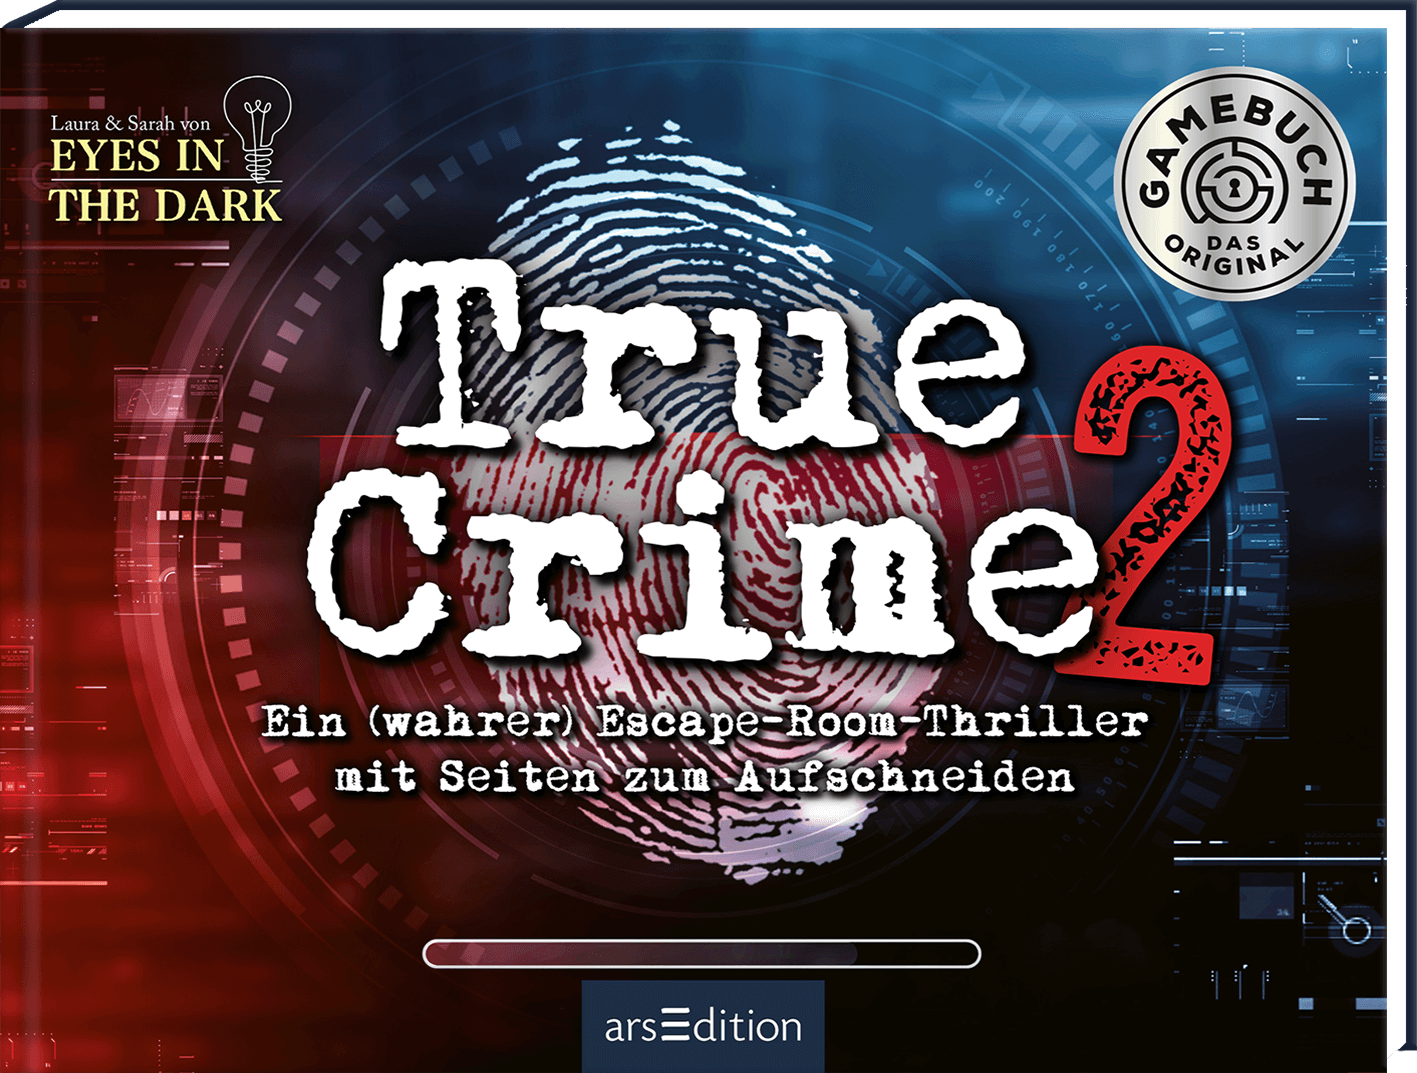 True Crime 2 Lösungshilfen